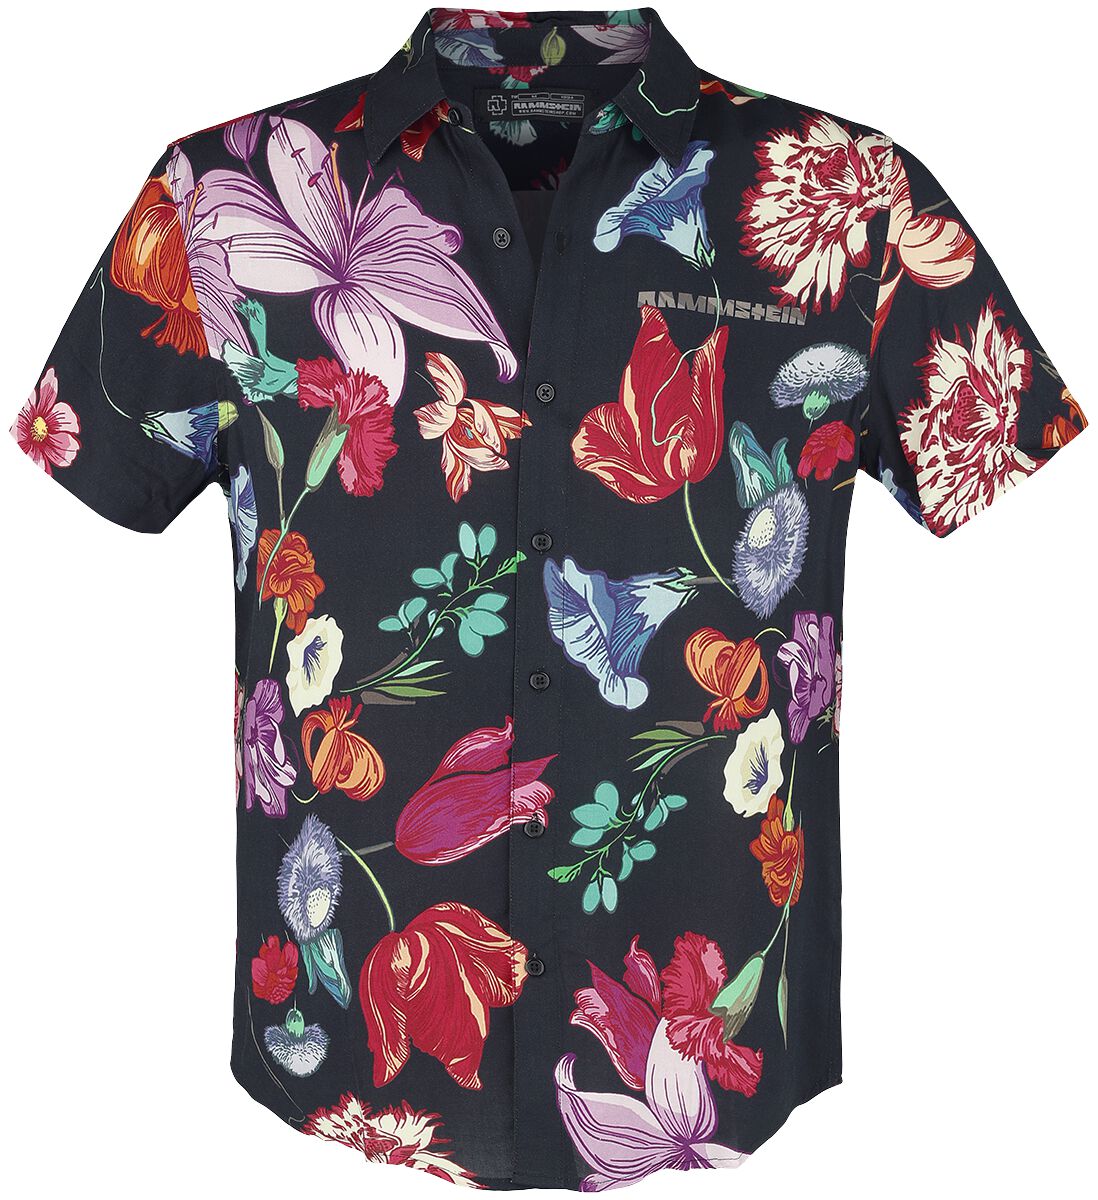 Rammstein Kurzarmhemd - Blumen - S bis 5XL - für Männer - Größe 4XL - multicolor  - Lizenziertes Merchandise!